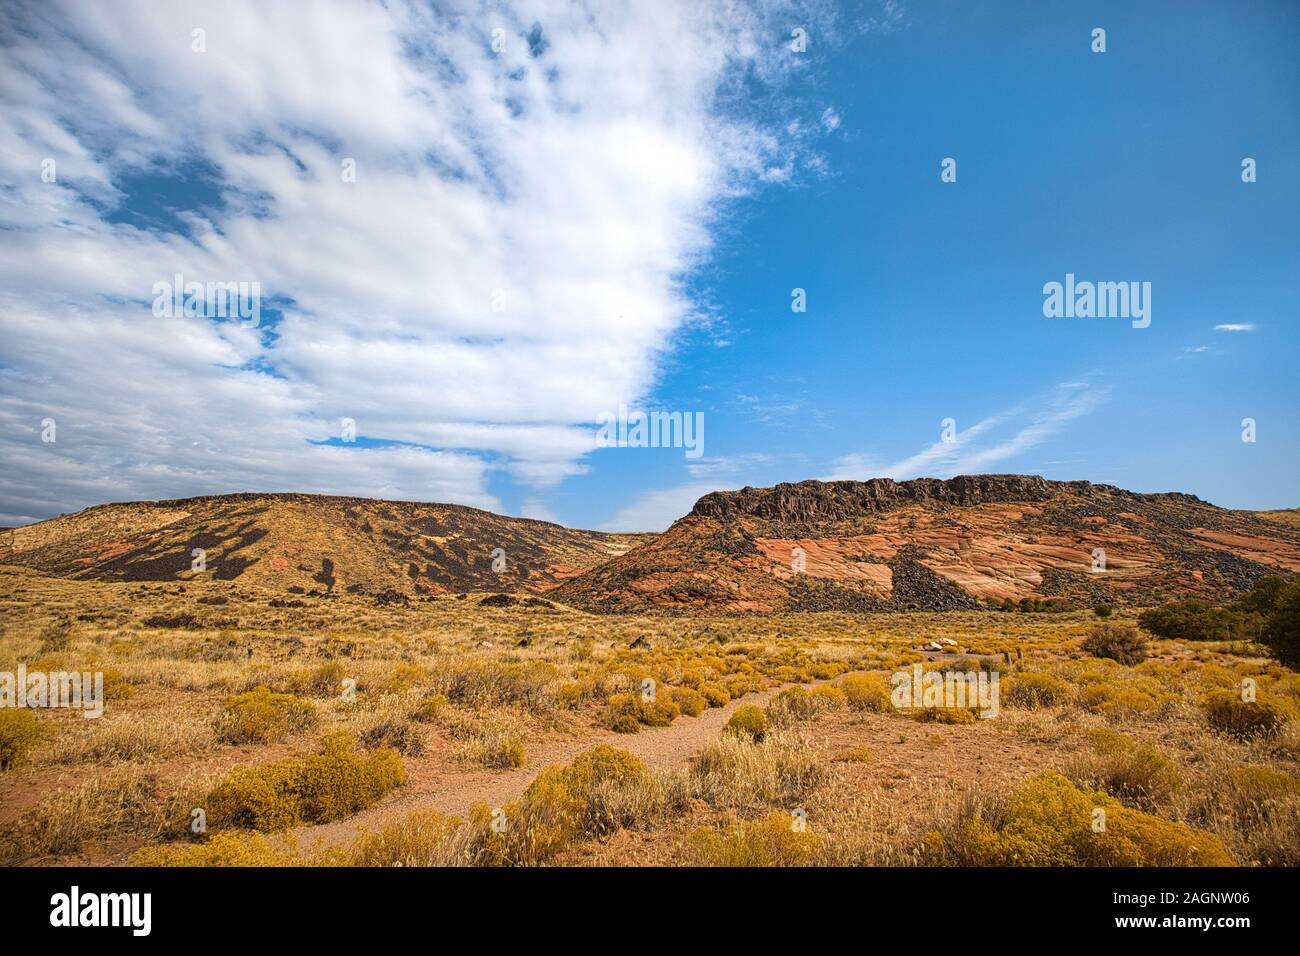 Snow Canyon State Park es un parque estatal de Utah, EE.UU., con un cañón tallado en la piedra arenisca de Navajo rojo y blanco en las montañas rojizas. Foto de stock